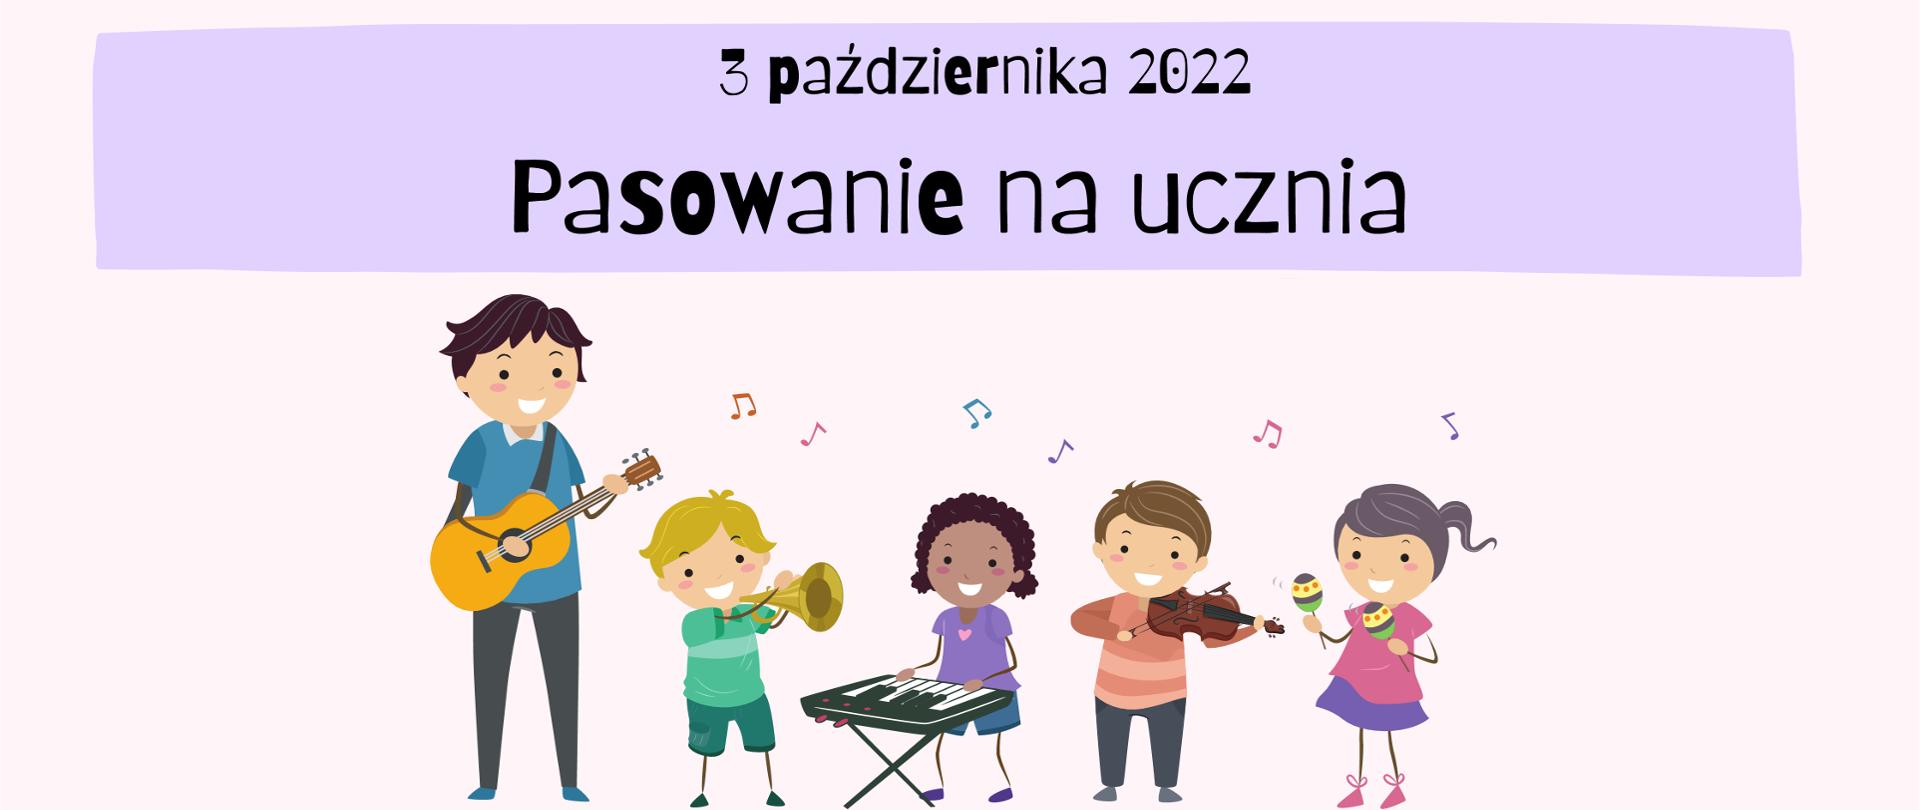 Plakat przedstawia grupkę dzieci z nauczycielem grających na instrumentach muzycznych.